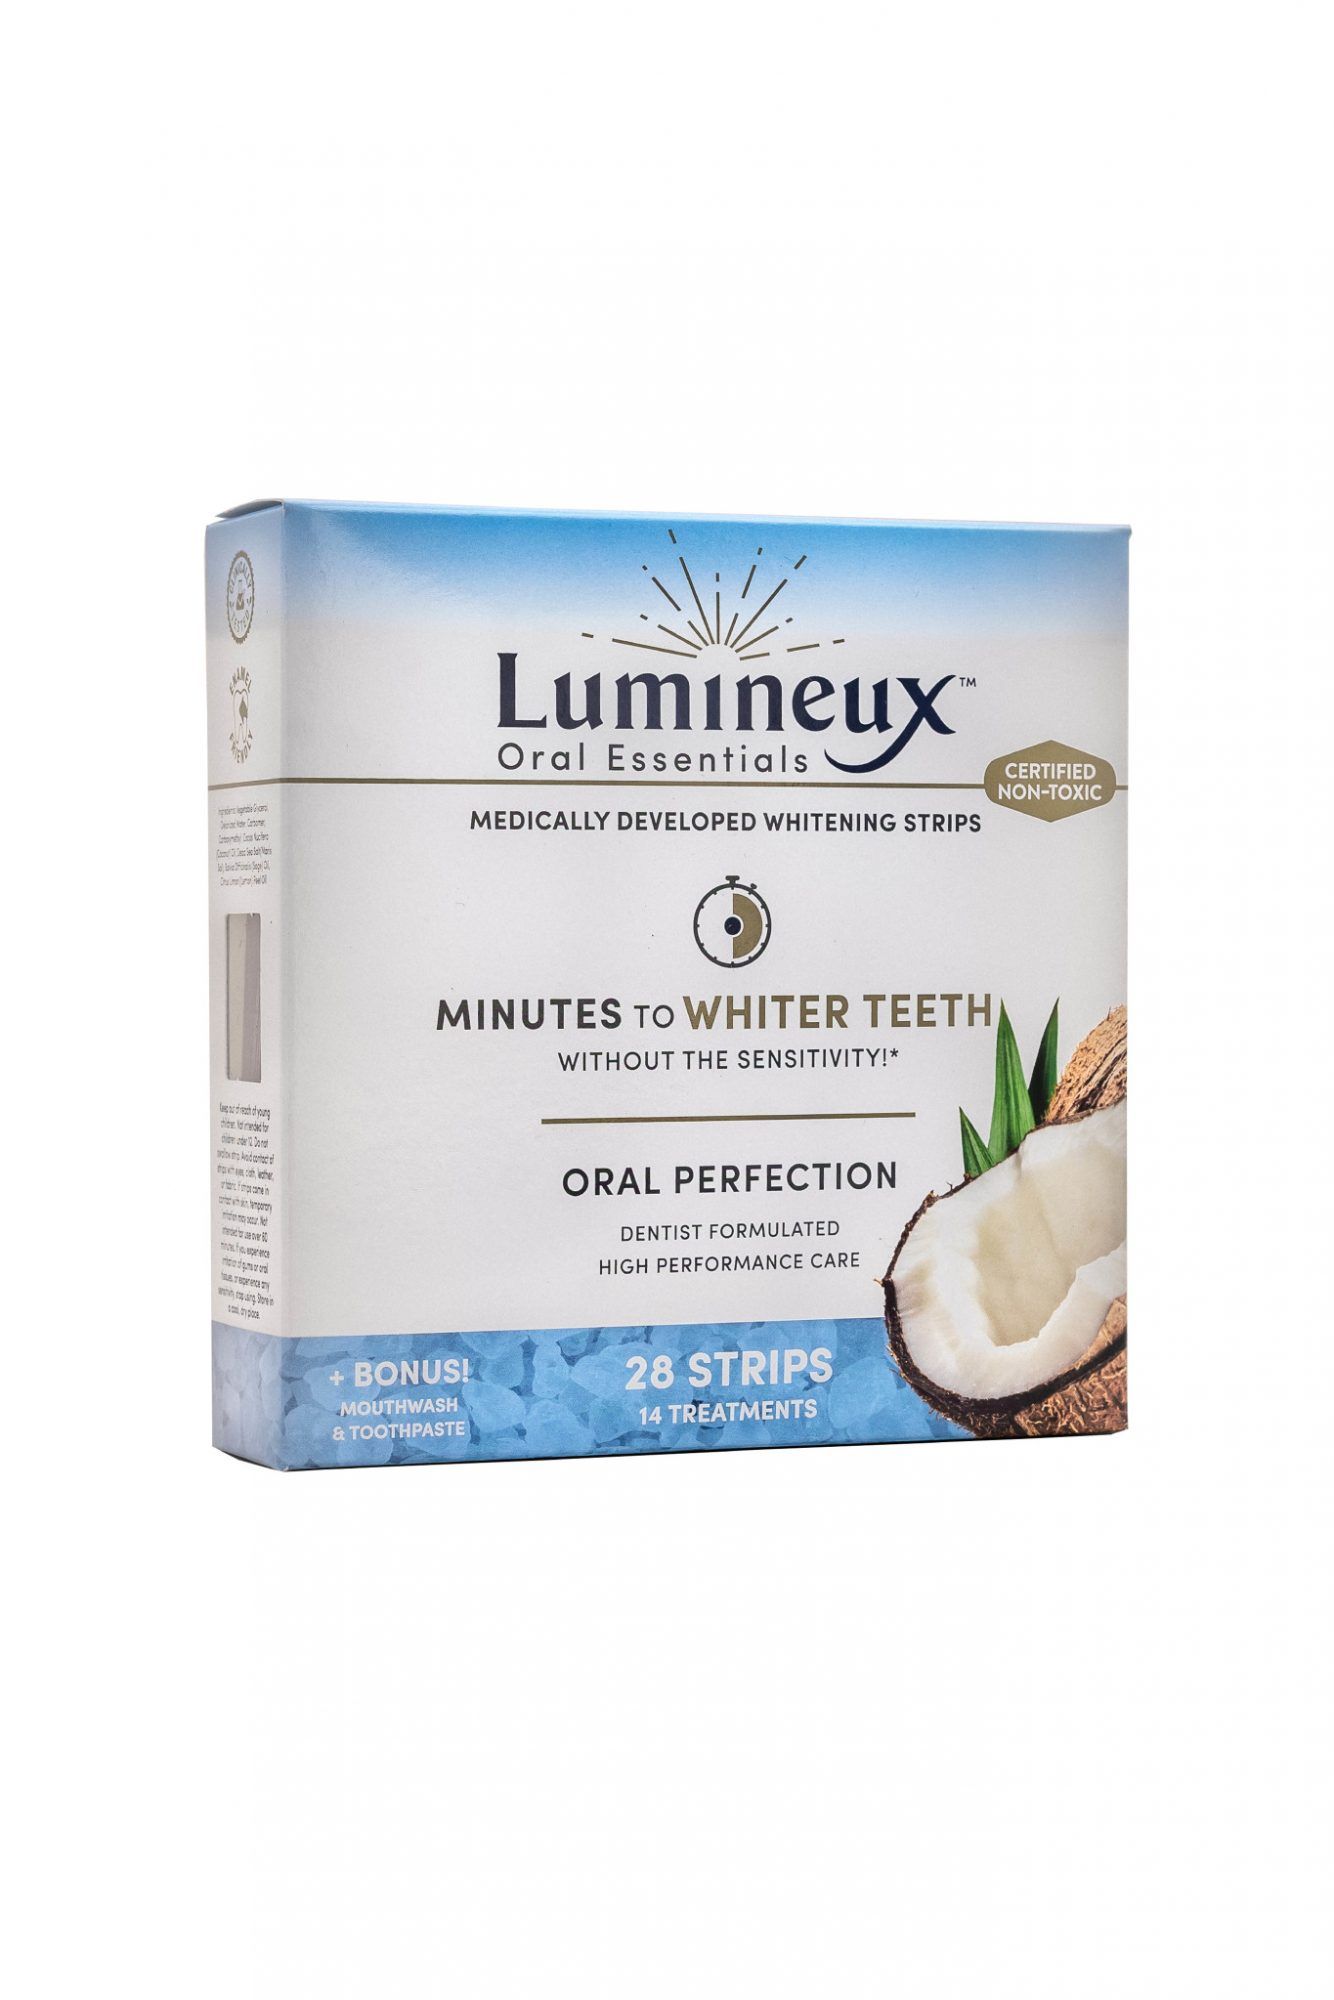 Najbolje izbjeljivanje zuba kod kuće: Lumineux Oral Essentials trake za izbjeljivanje